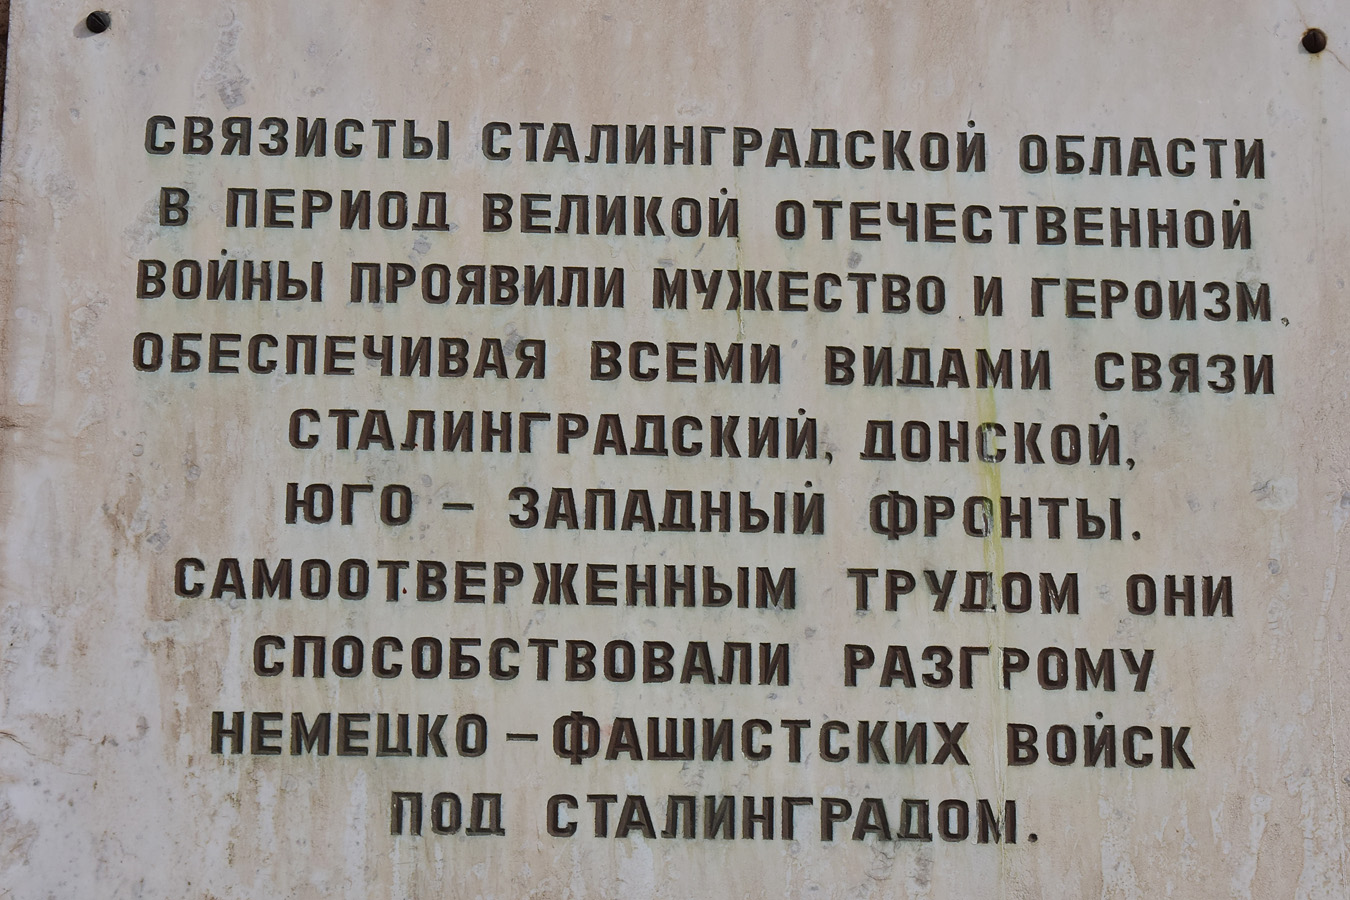 Wołgograd, Улица Мира, 9. Wołgograd — Memorial plaques